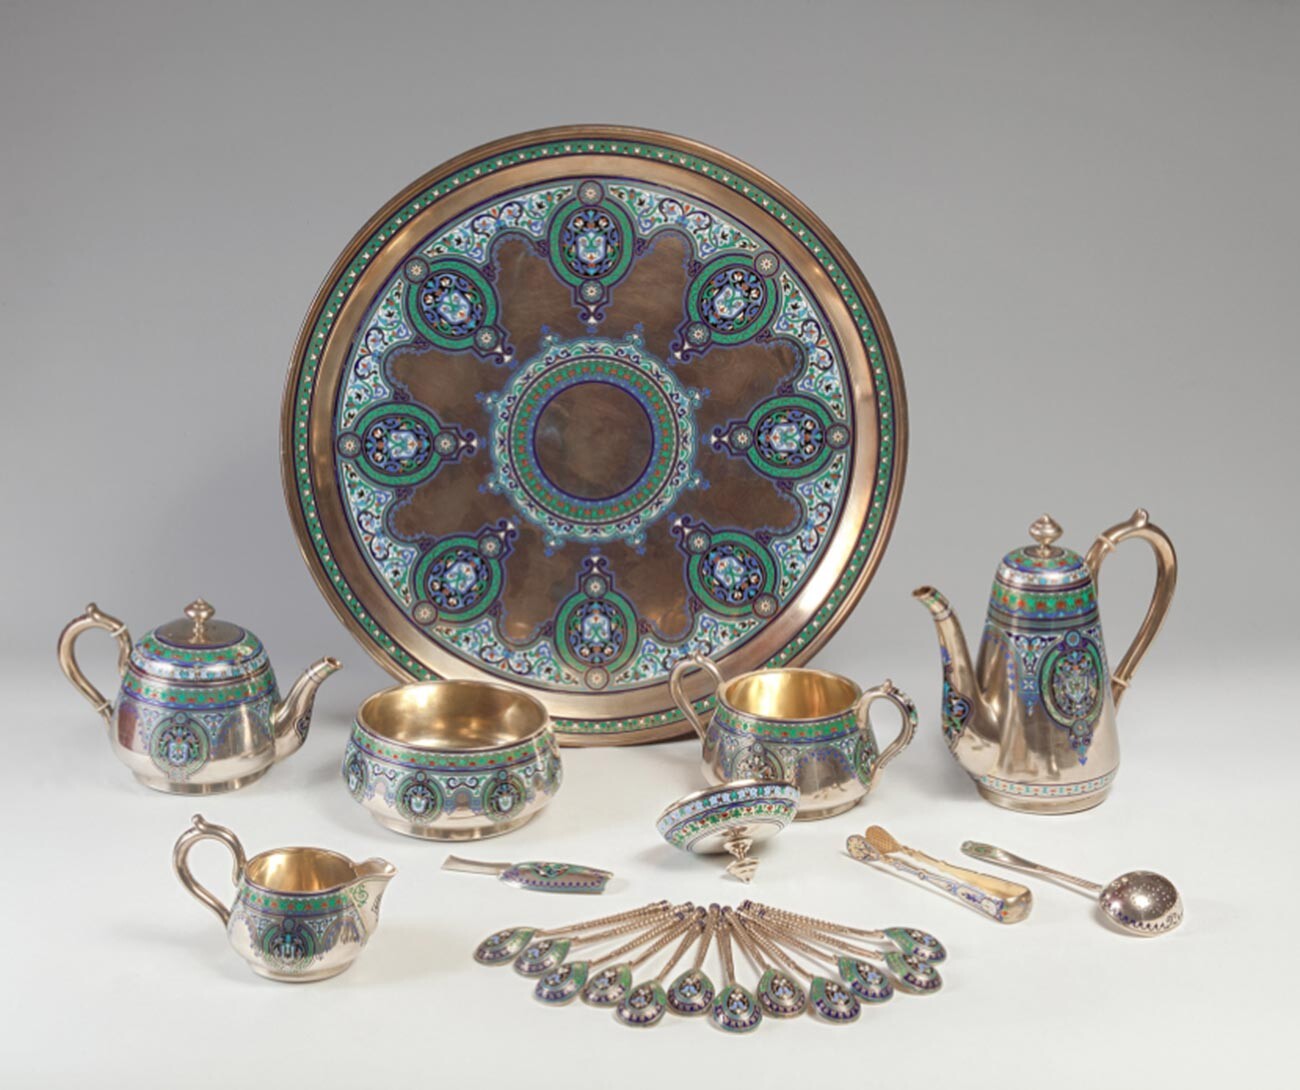 Servizio da tè, 1879-1883
